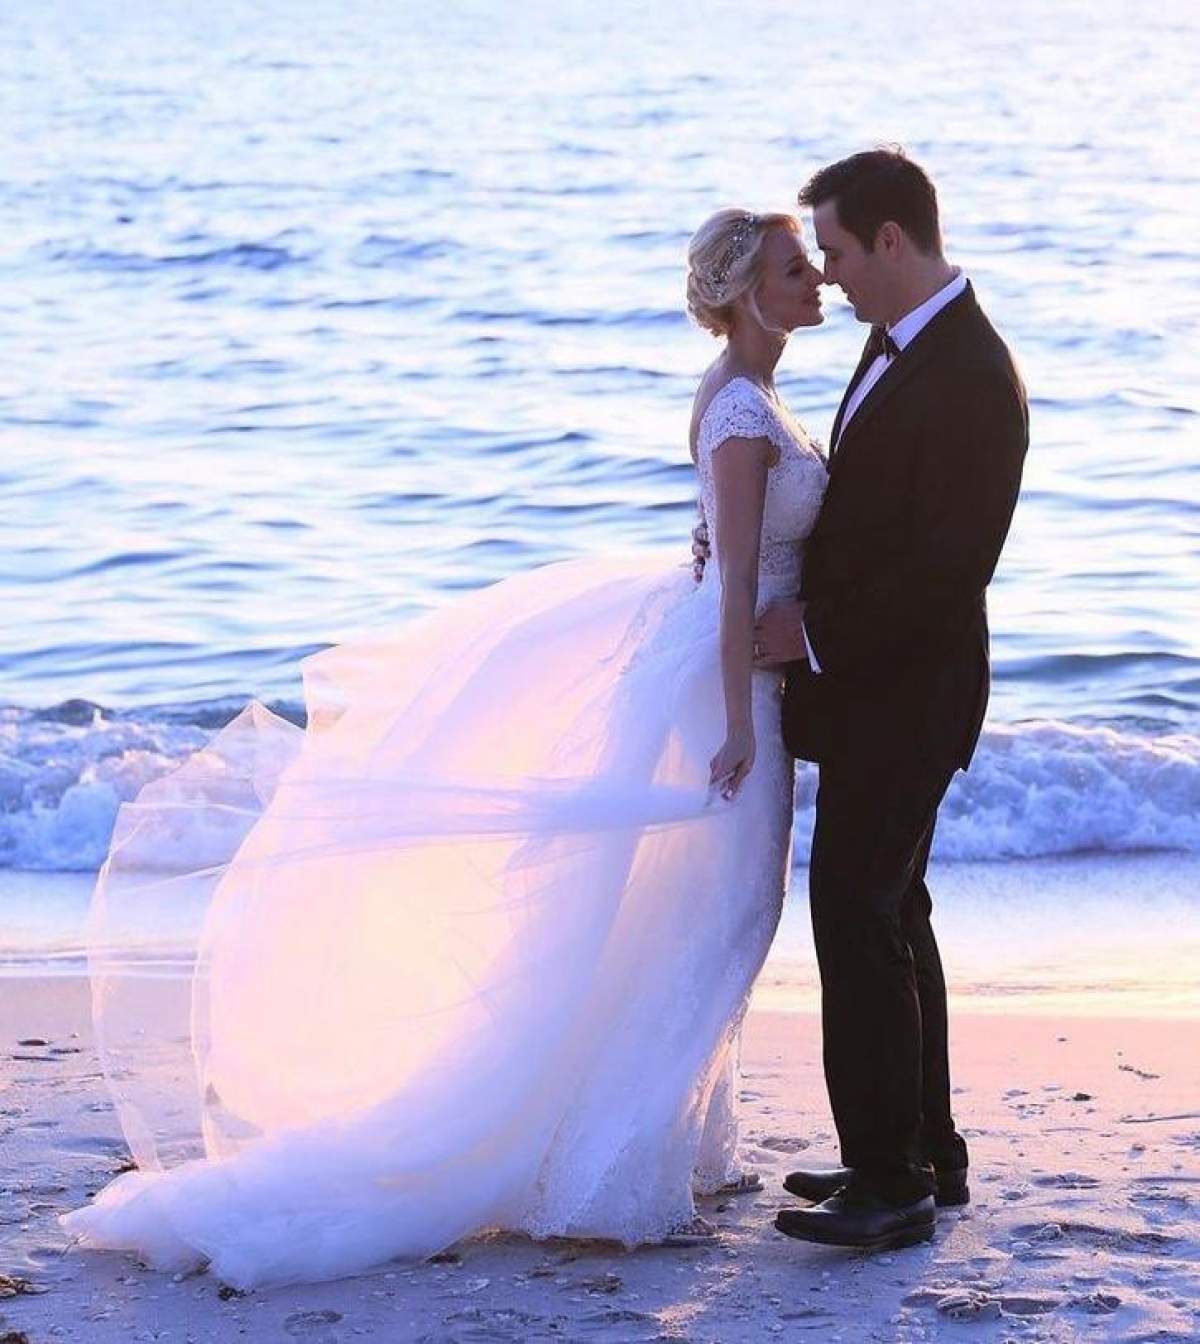 Catrinel Sandu și Steave își aniversează căsnicia. Ce mesaj emoționant a postat vedeta pe rețelele de socializare / FOTO